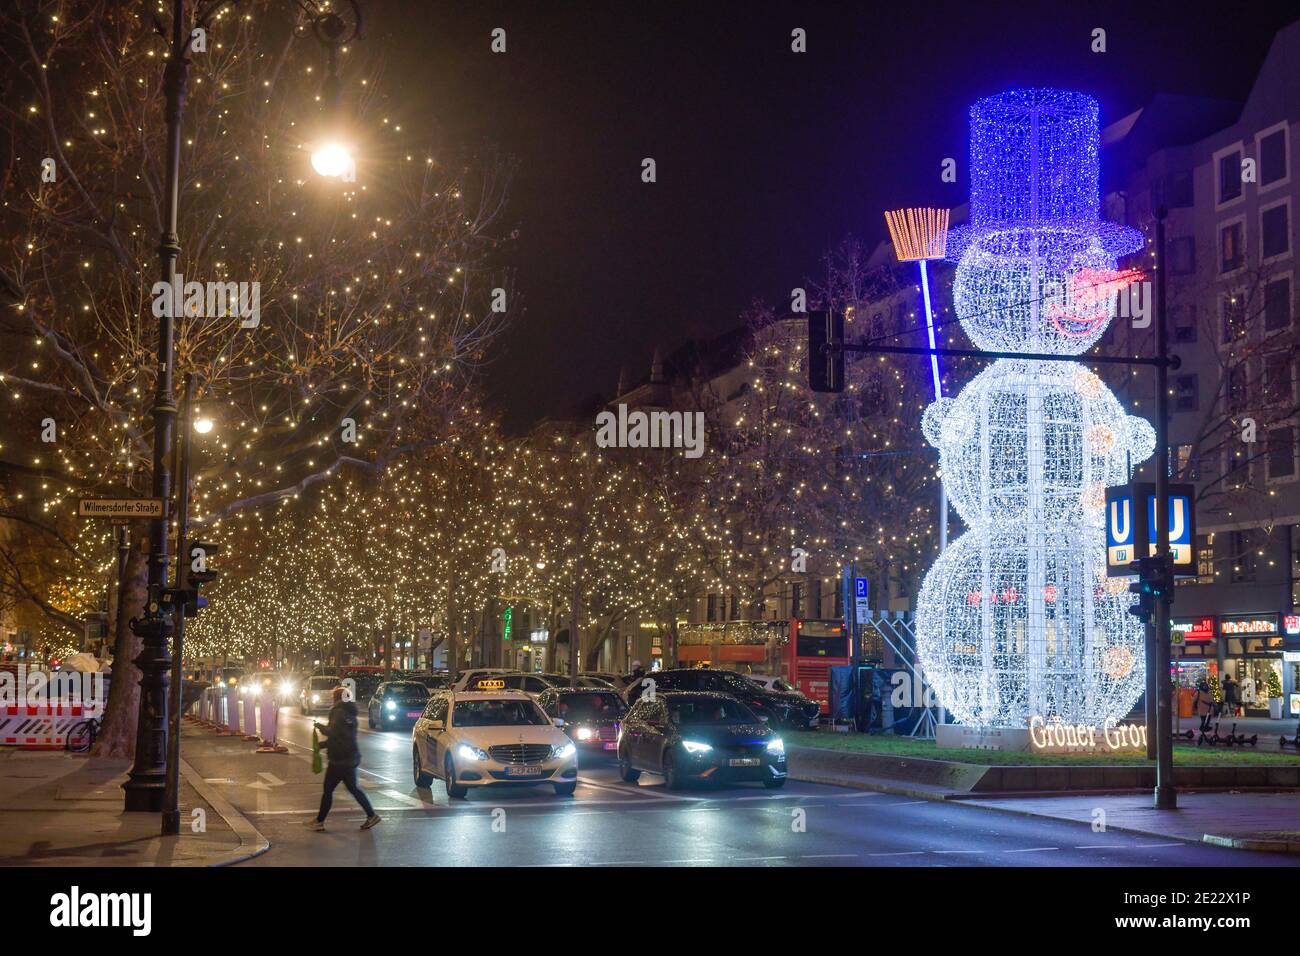 Schneemann, Weihnachtsbeleuchtung, Adenauerplatz, Kurfürstendamm,  Charlottenburg, Berlin, Deutschland Stockfotografie - Alamy